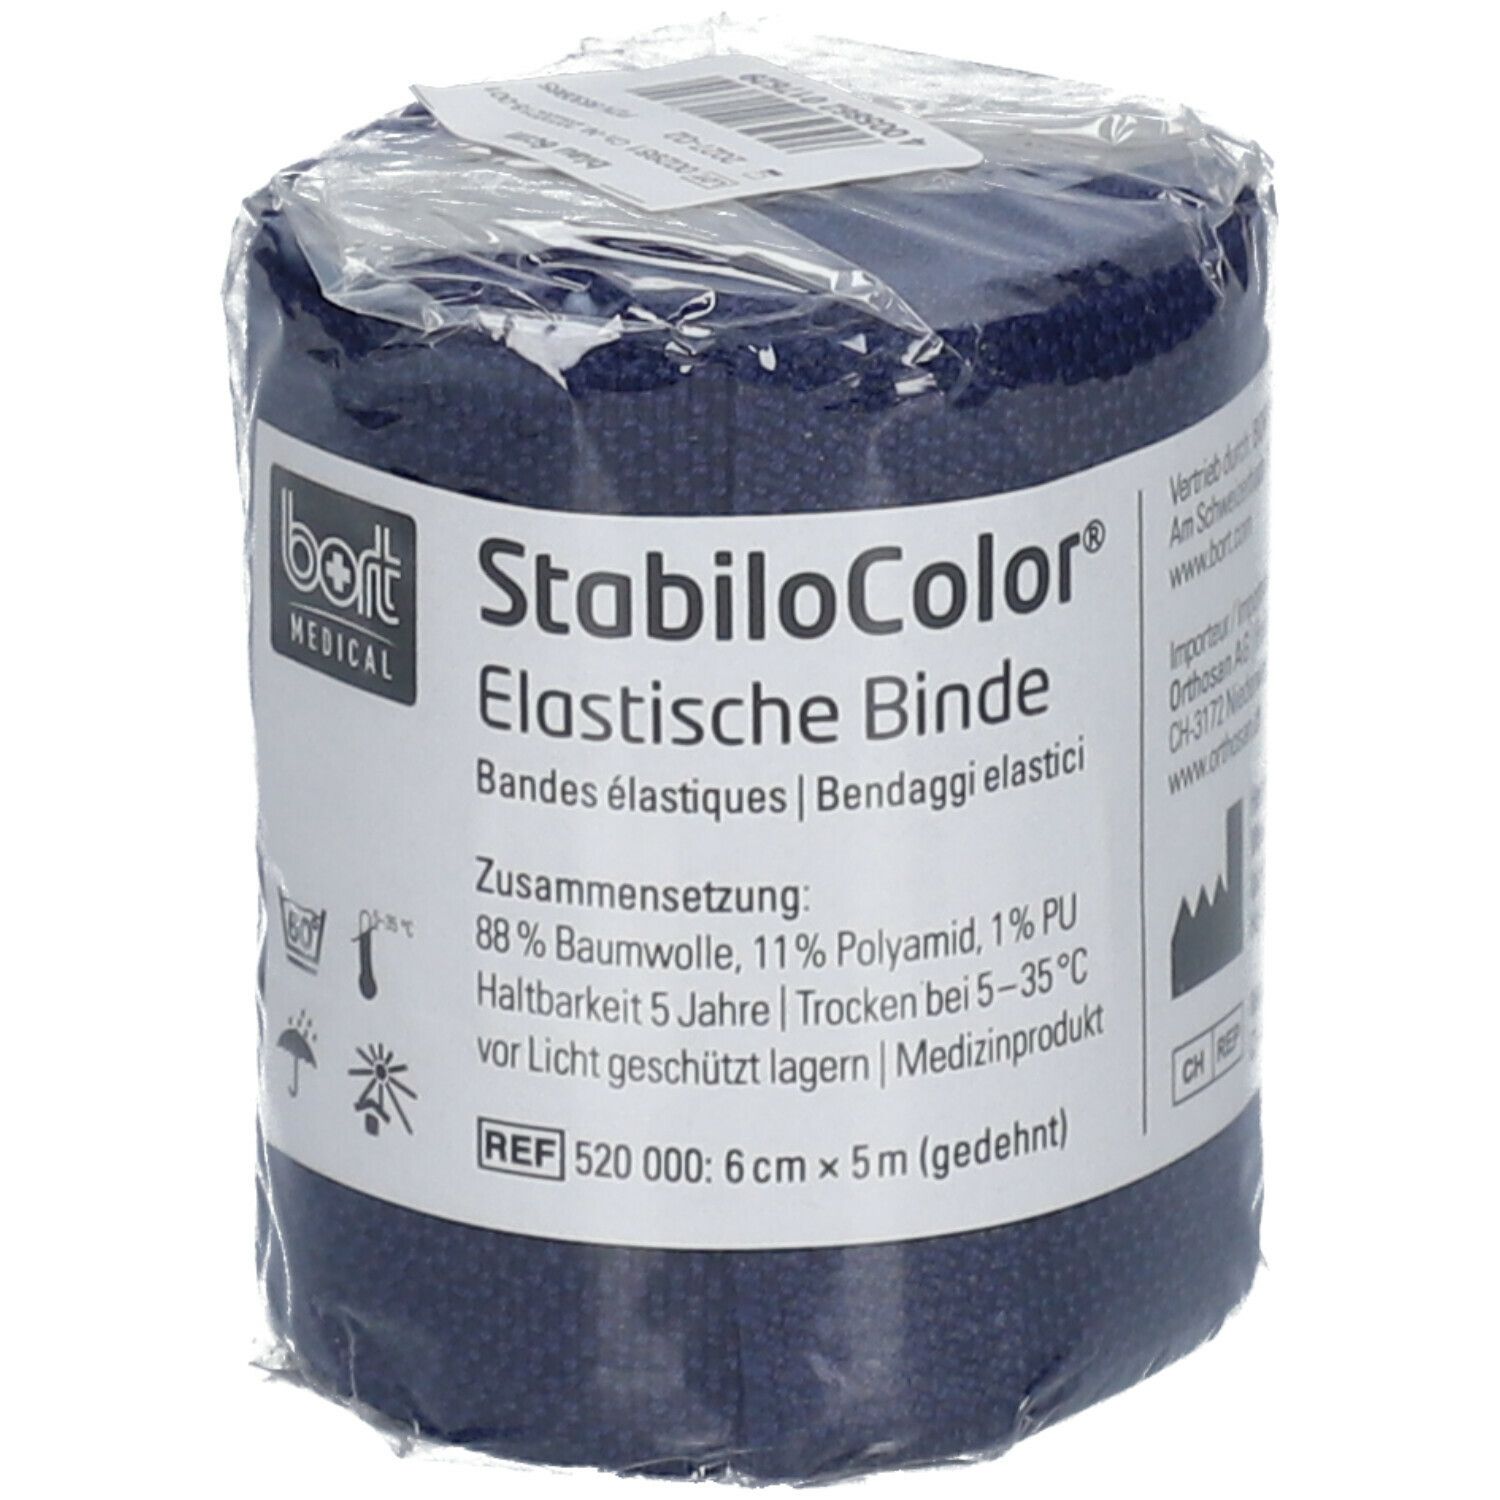 BORT StabiloColor® Binde 6 cm blau